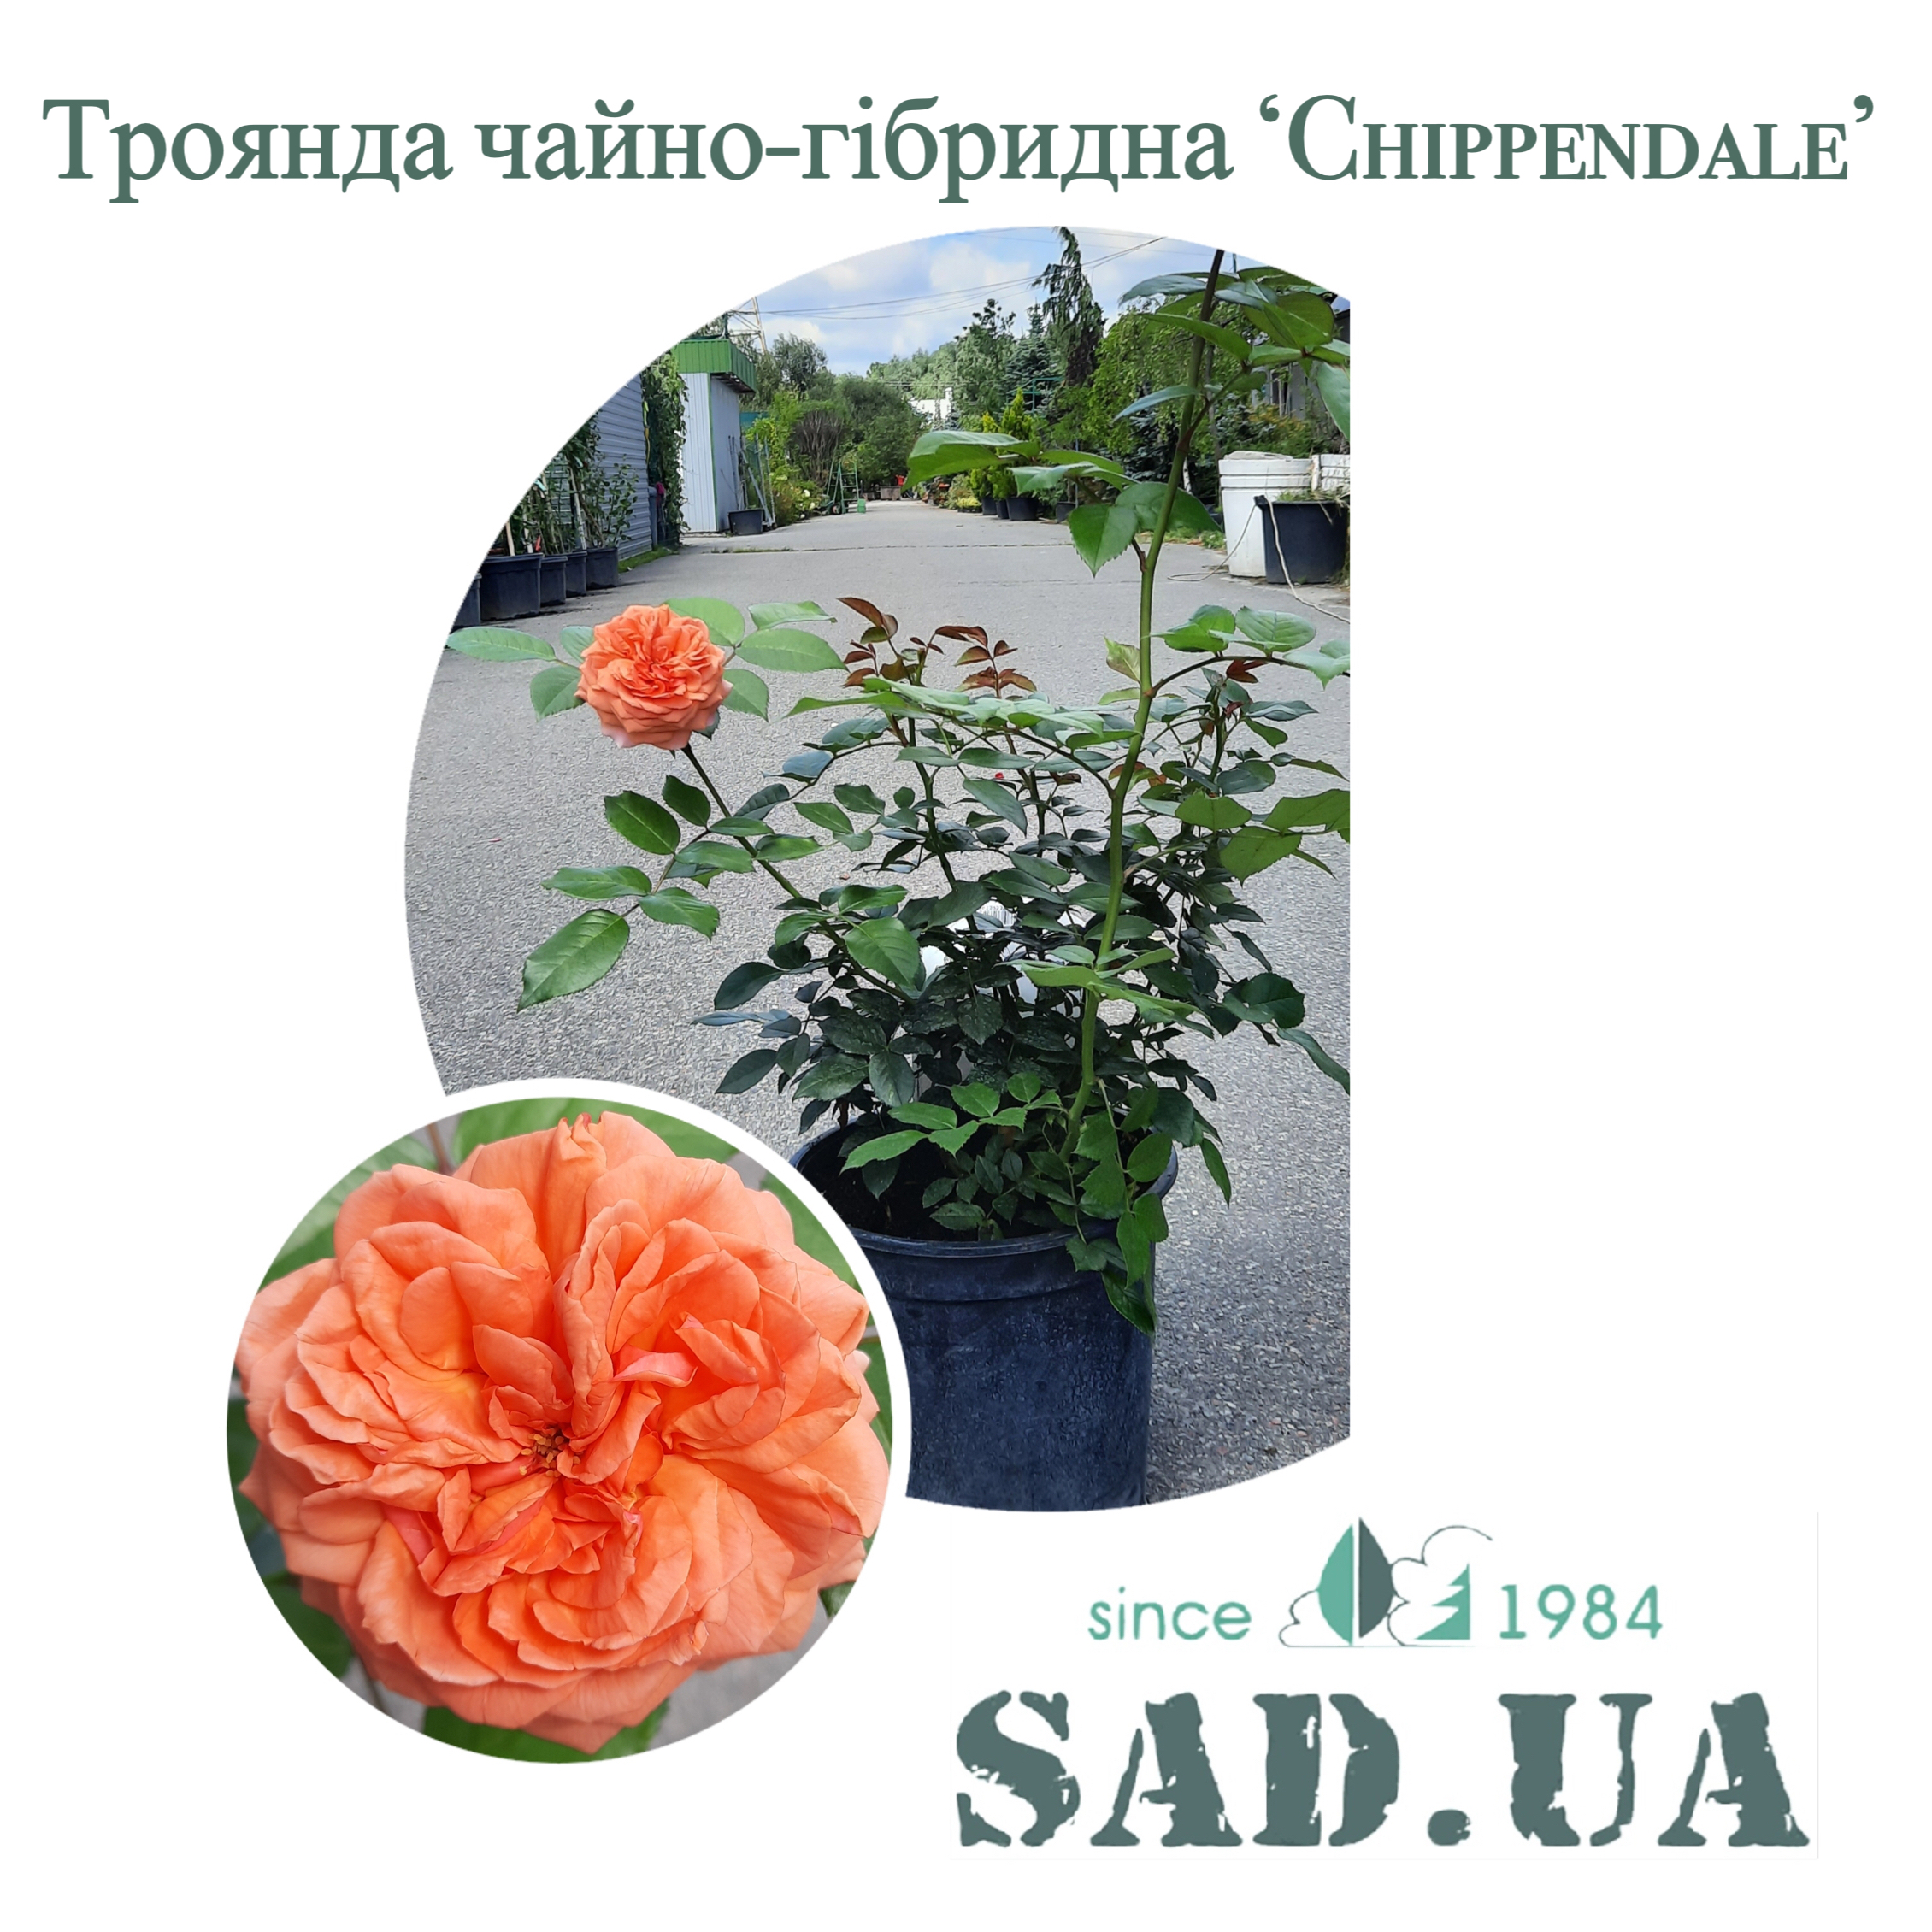 Роза чайно-гибридная Chippendale / Duchess of Corwall 40-60см, C7 - 0 - SAD.UA 